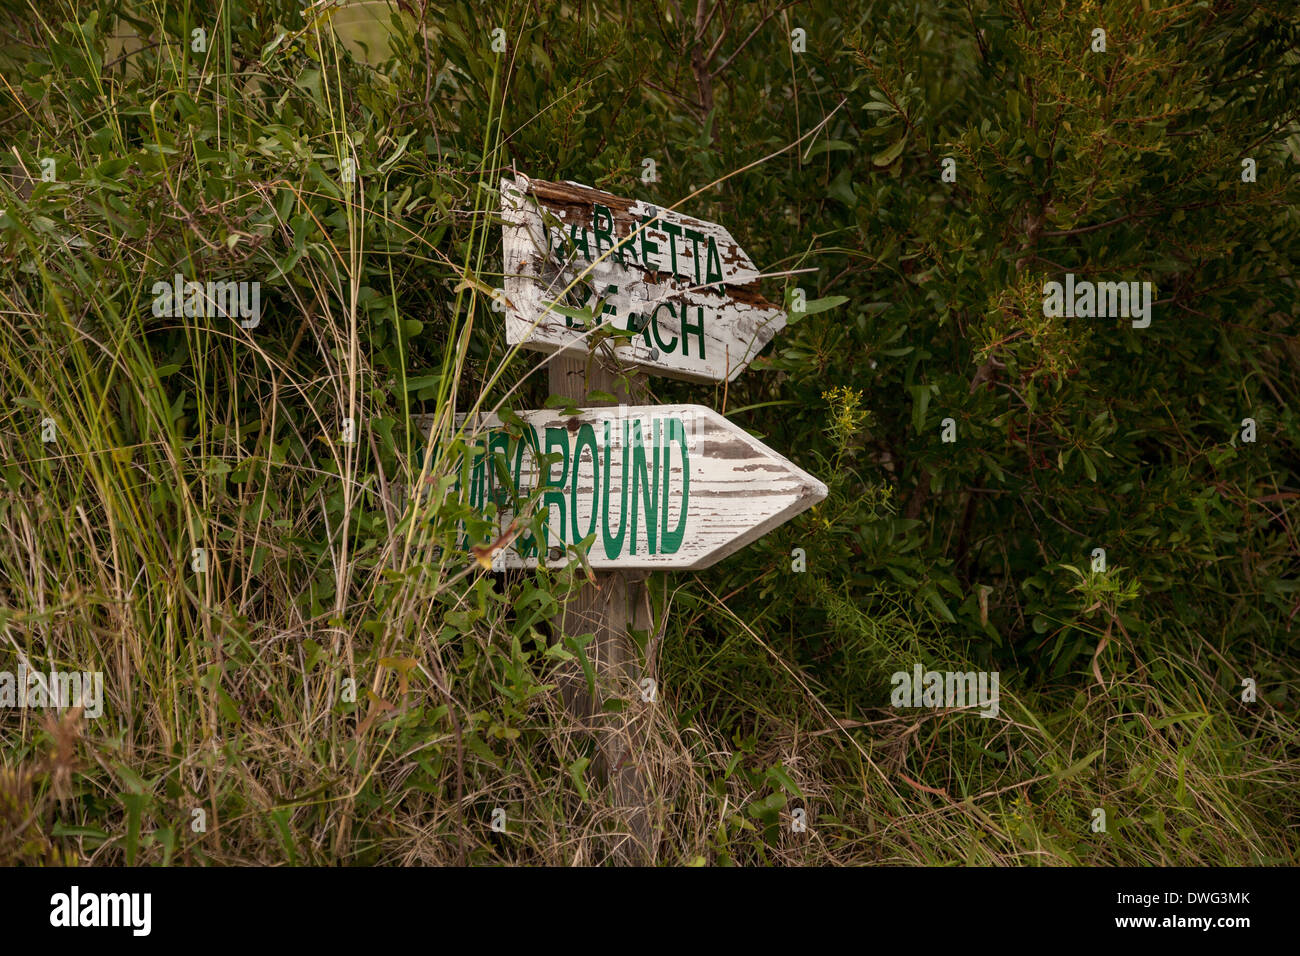 Vecchia segnaletica direzionale su Sapelo Island, Georgia. Un isolato Gullah storico comunità occupata dai discendenti di slave su un isola del mare al largo delle coste della Georgia. Foto Stock